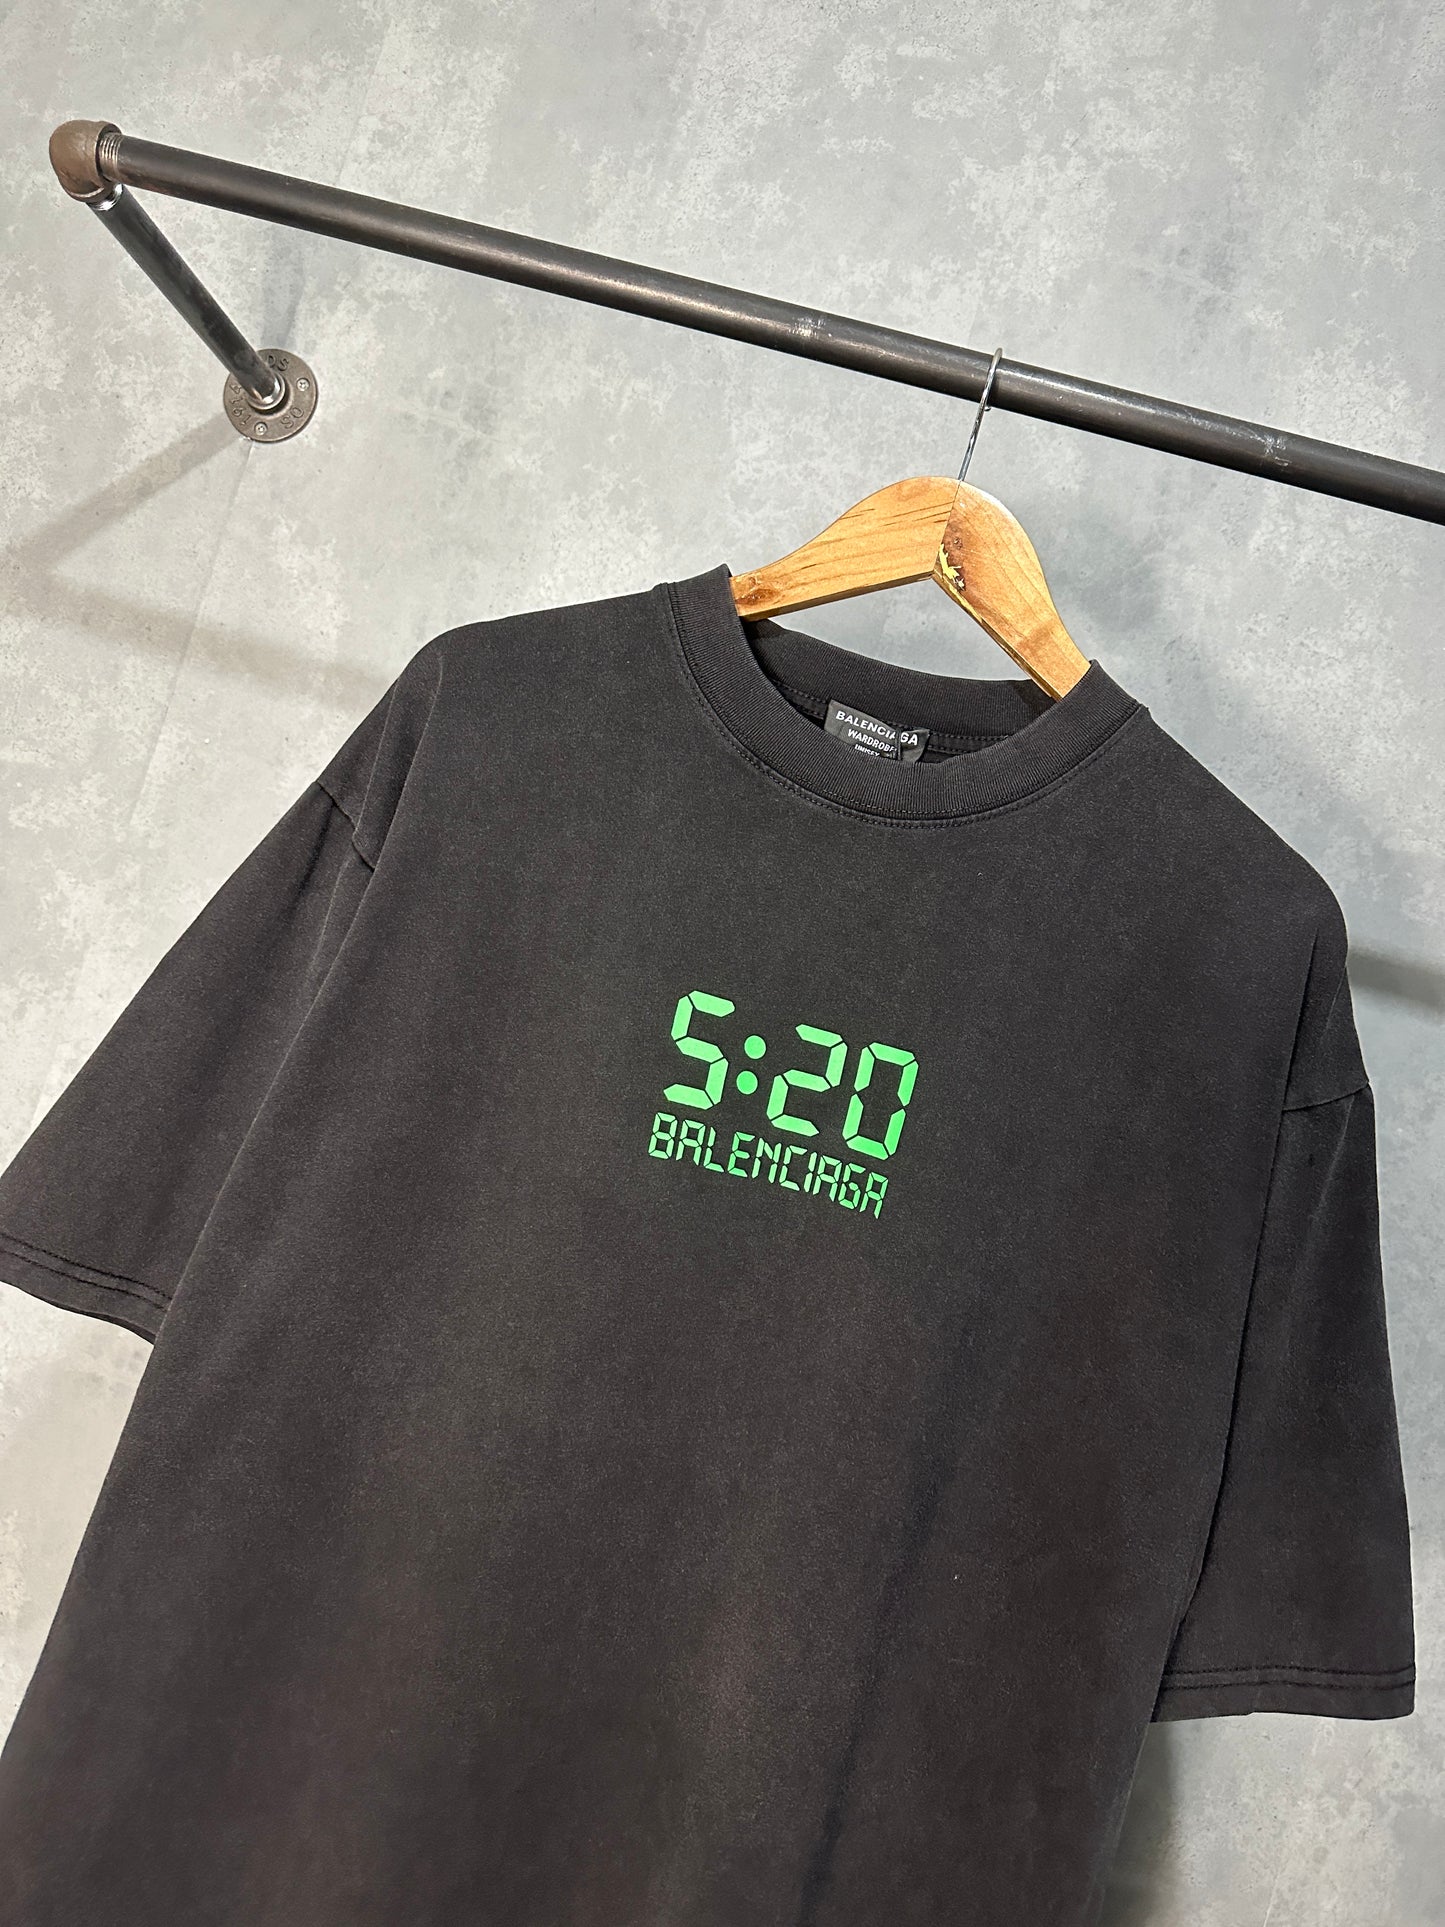 Balenciaga 520 Shirt